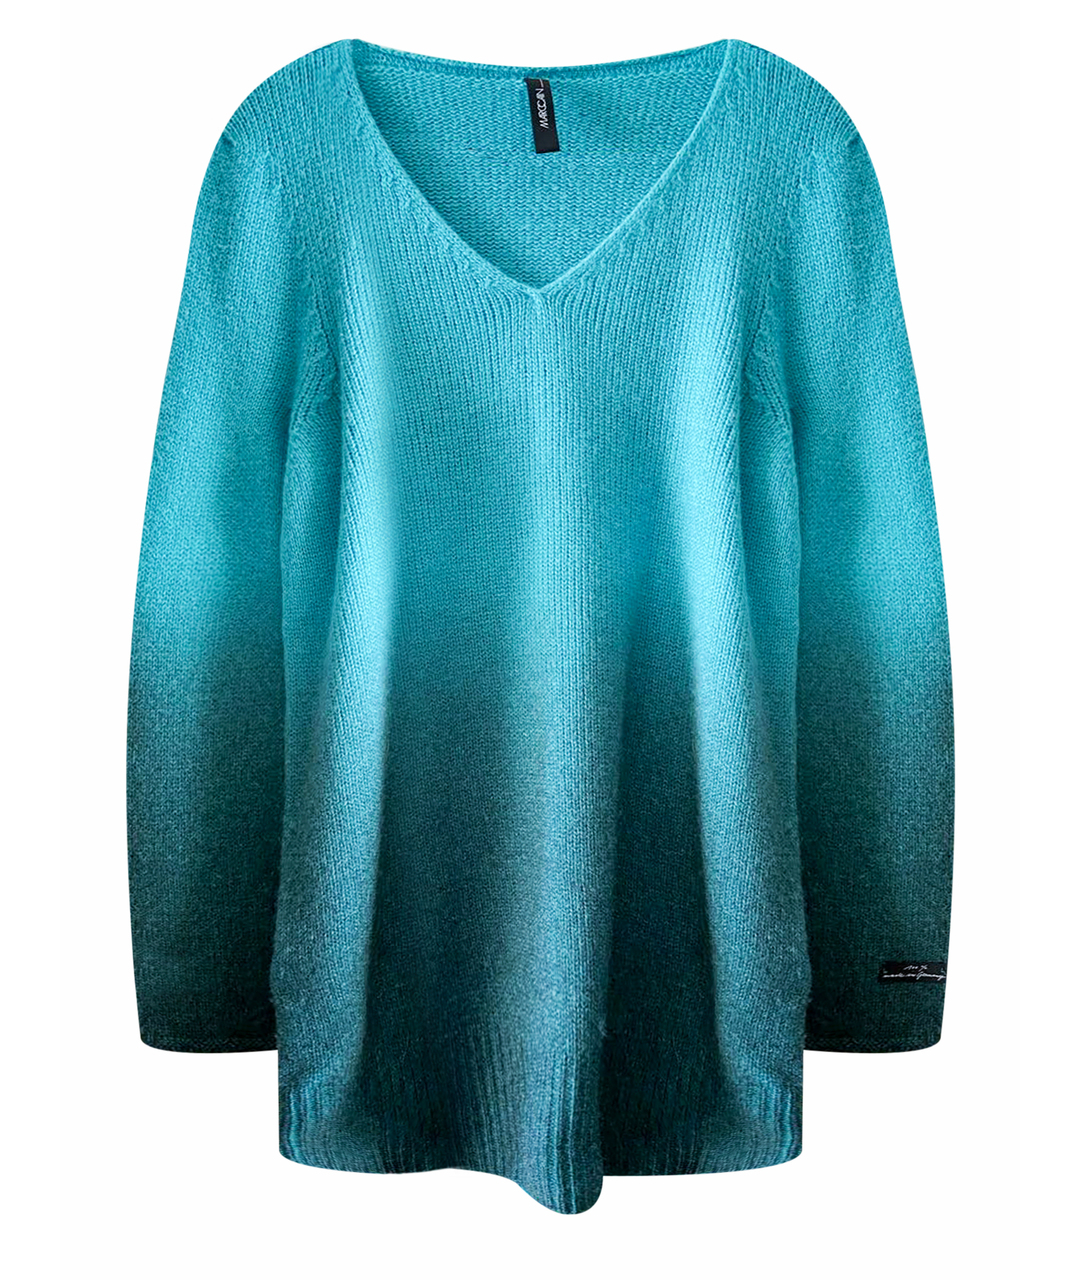 MARC CAIN Бирюзовый шерстяной джемпер / свитер, фото 1